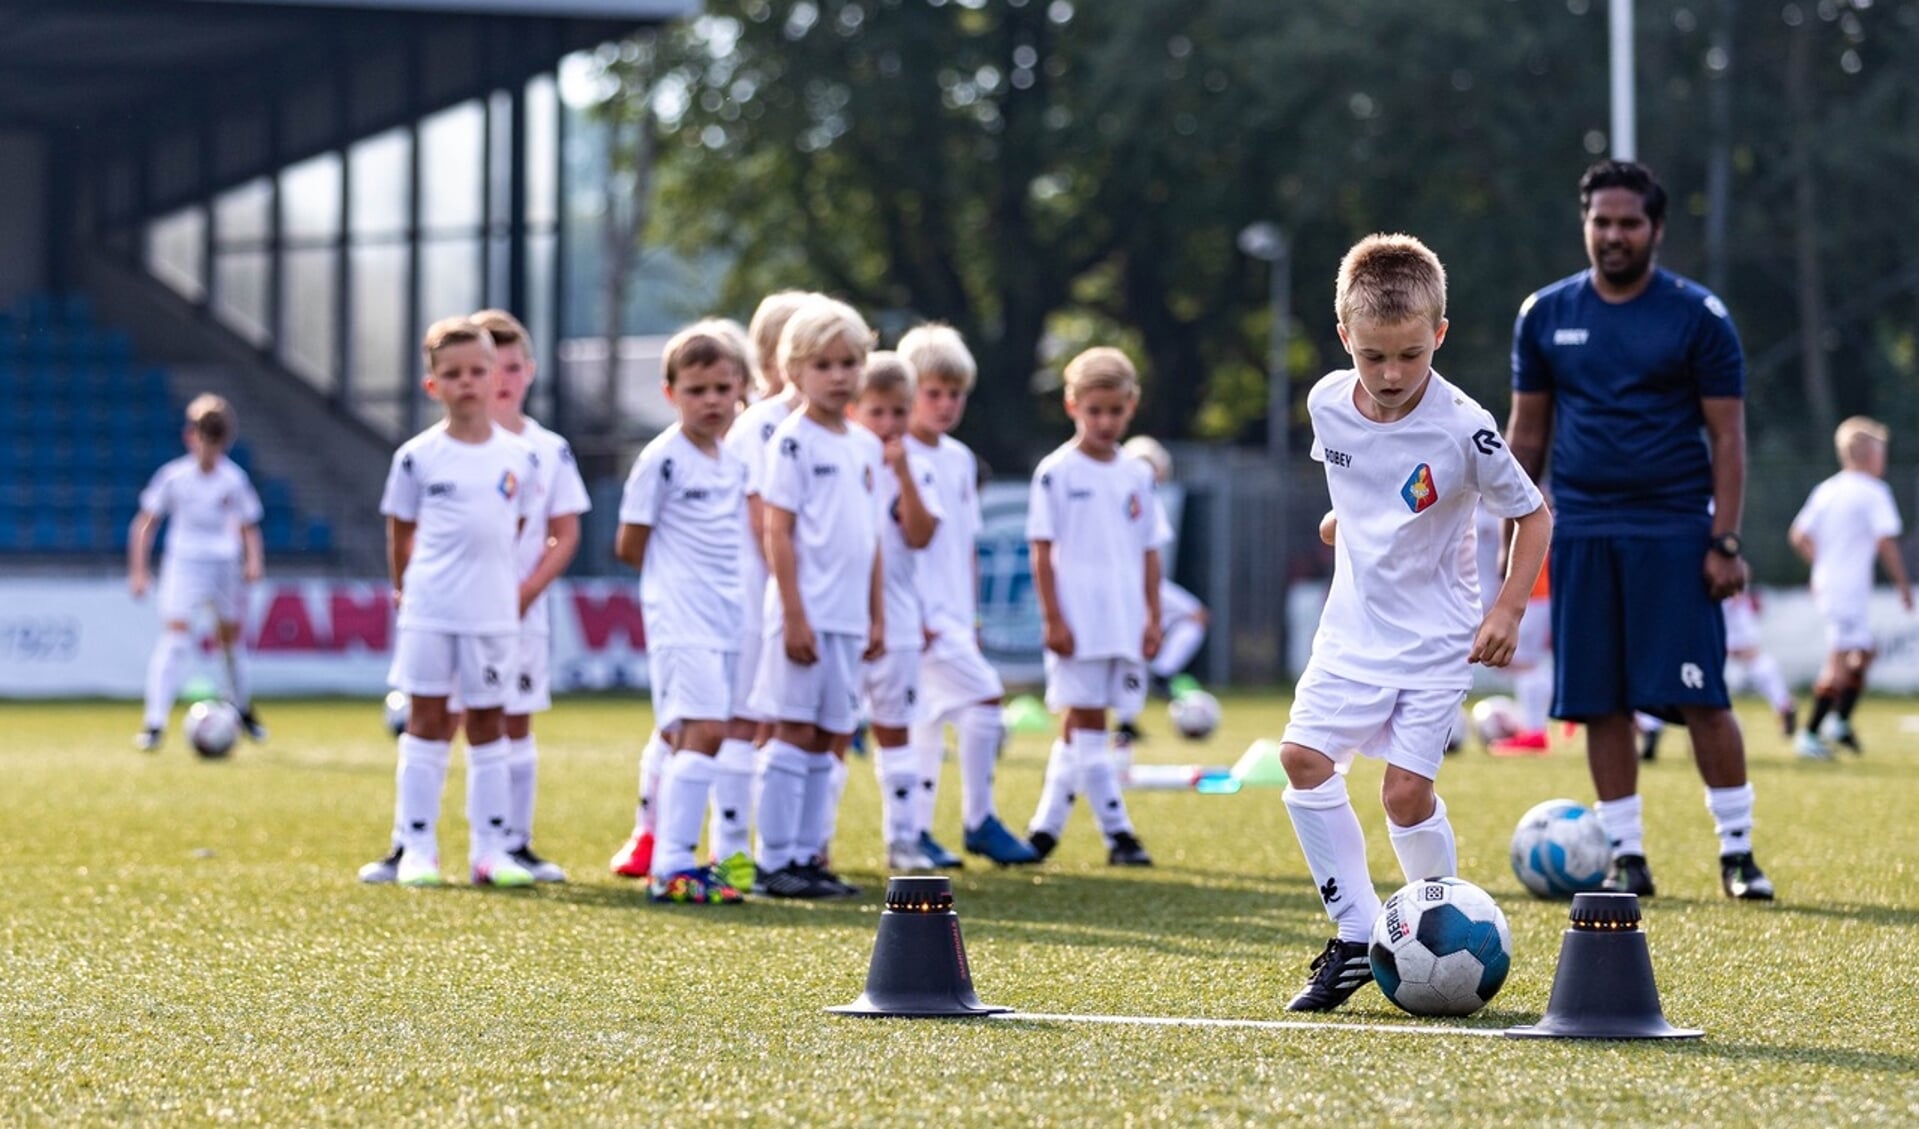 De jonge voetballers krijgen professionele training.